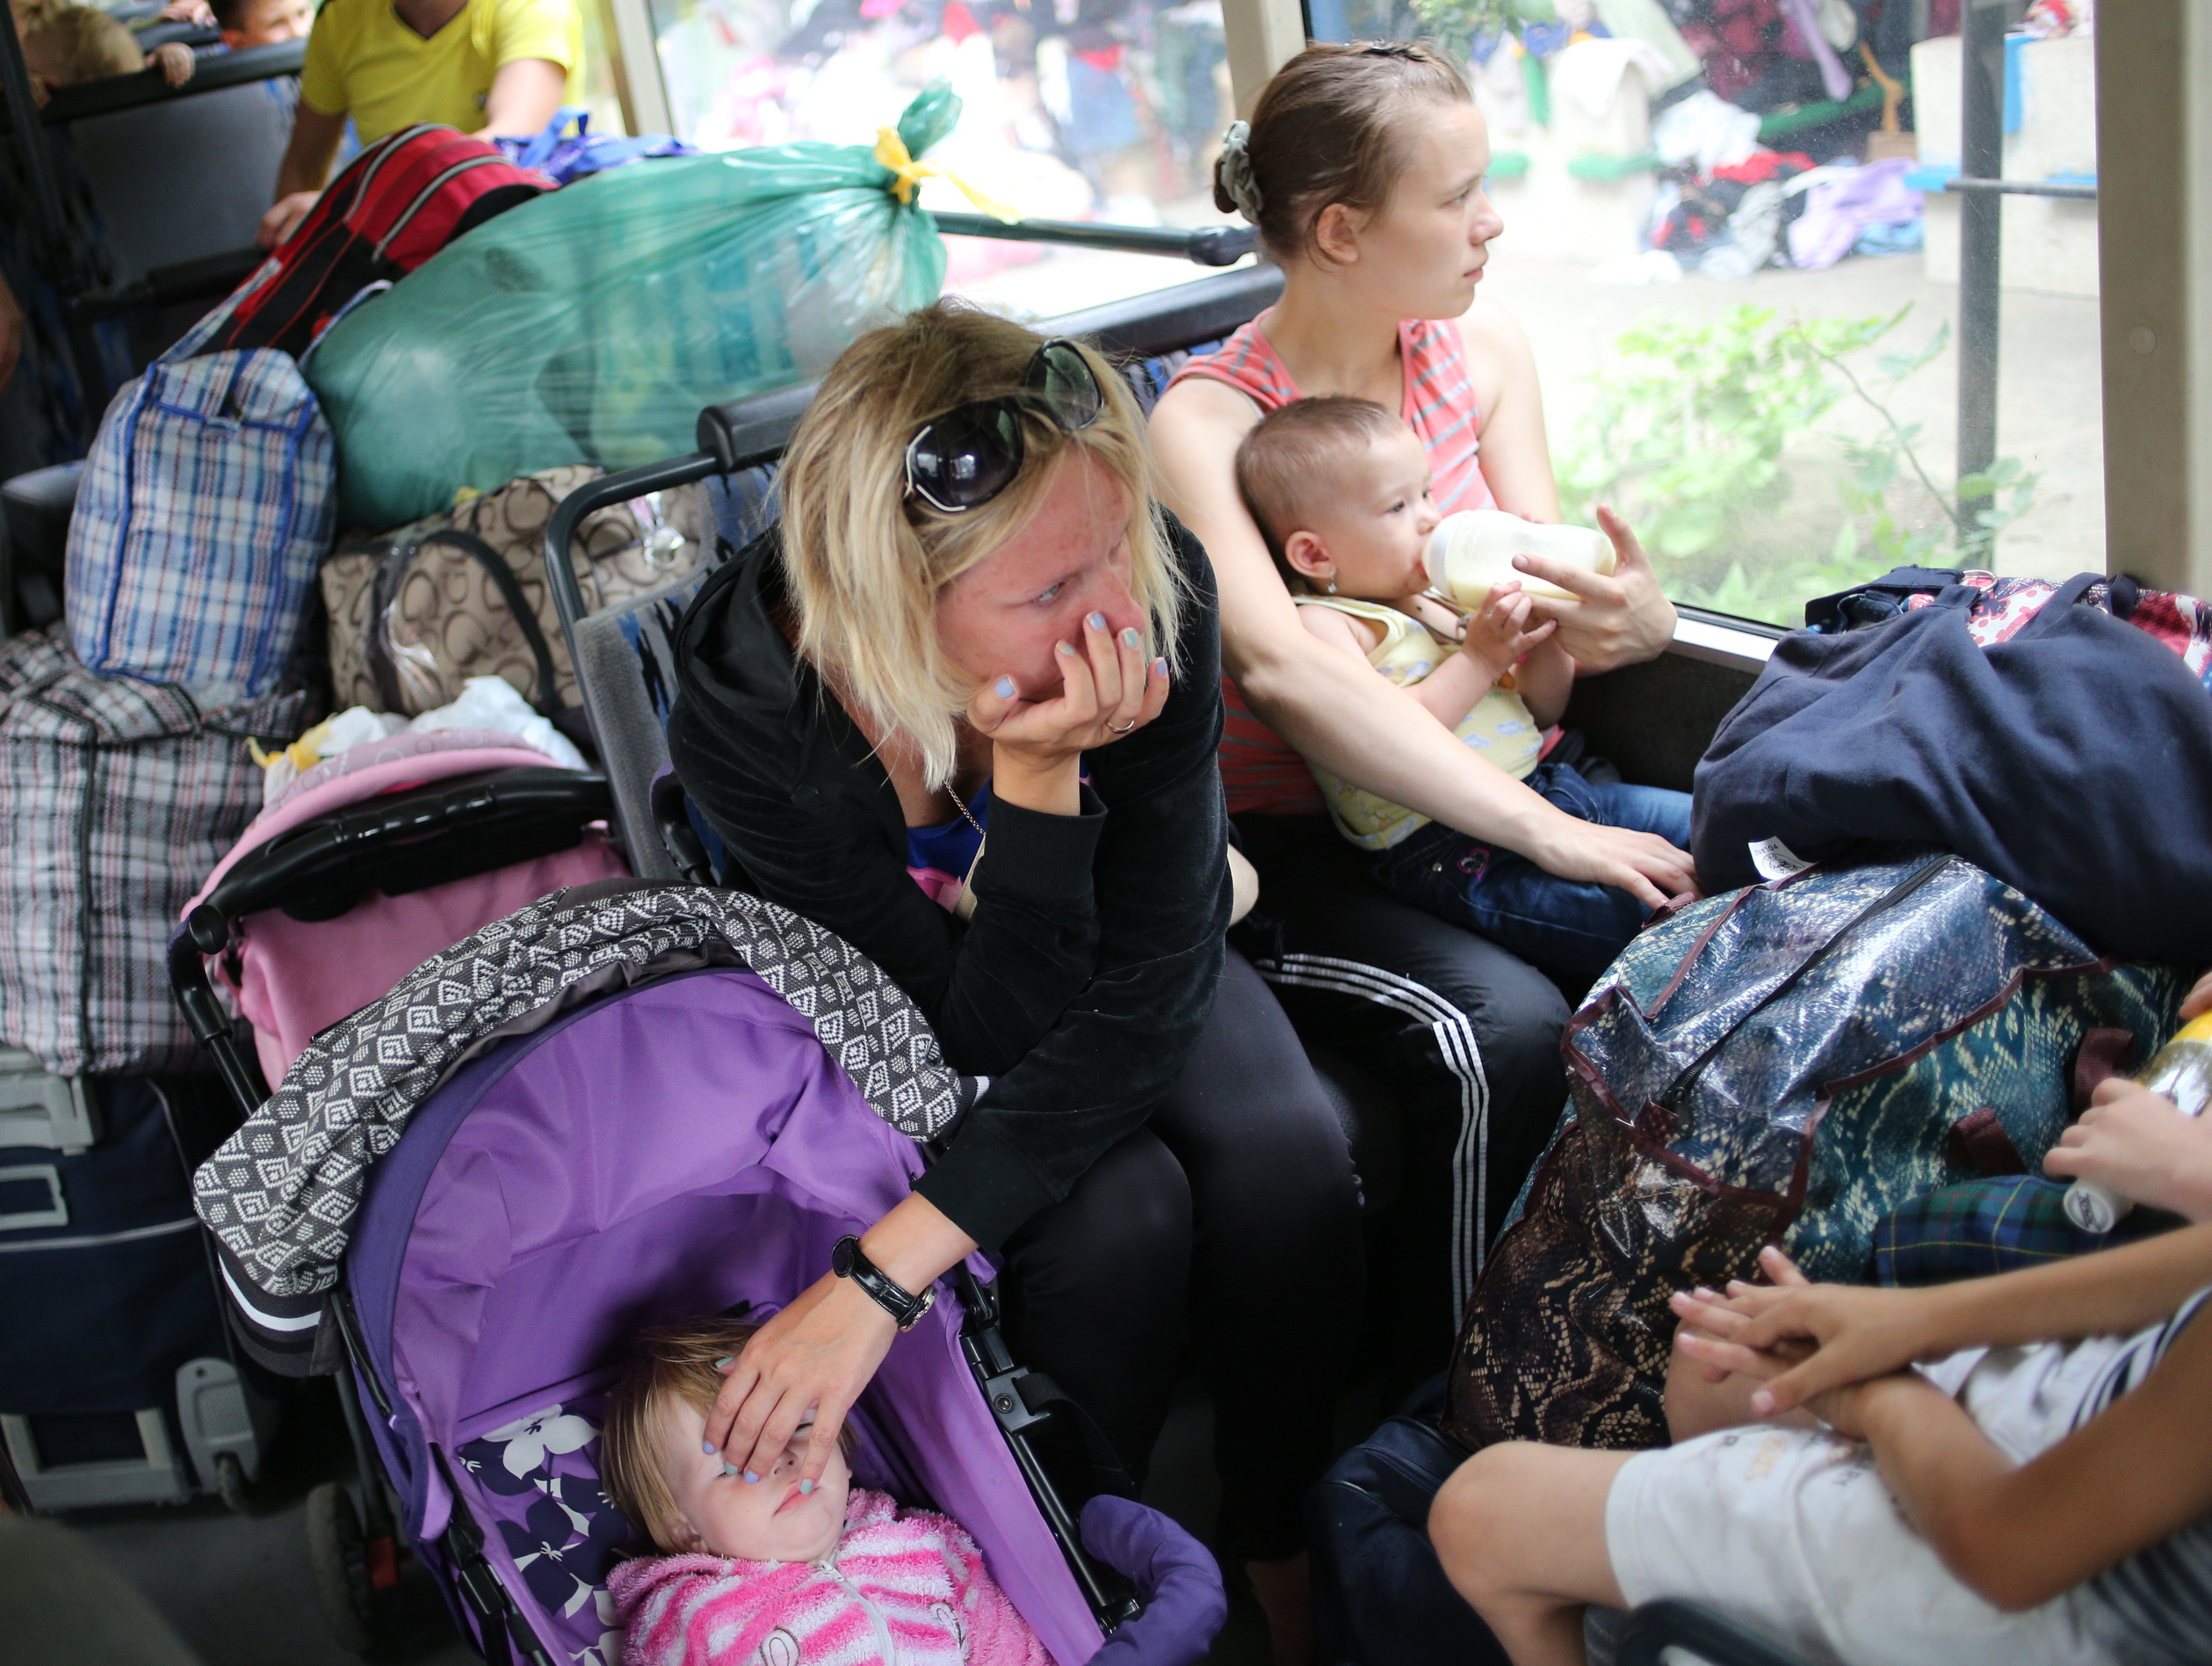 В Россию уехали более 1 миллиона граждан Украины